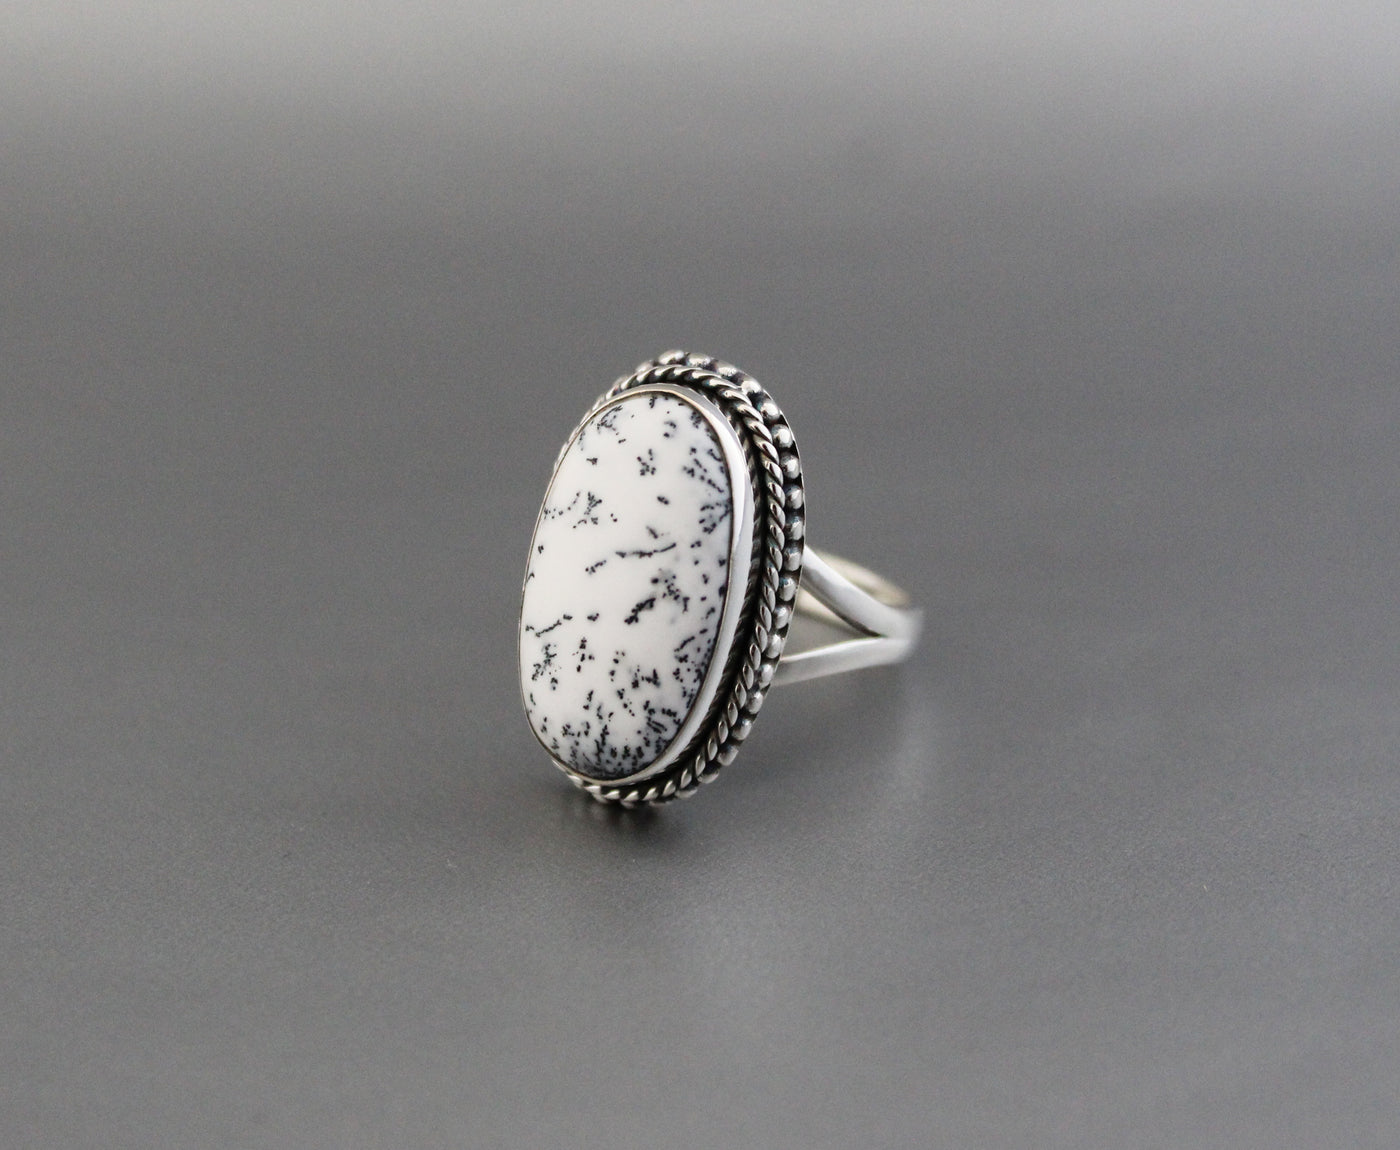 White Jasper ring, Natural Gemstone Ring, Jasper Ring, Statement Ring, White Agate Ring, Large Silver Rings, Organic, Boho, Bohemian